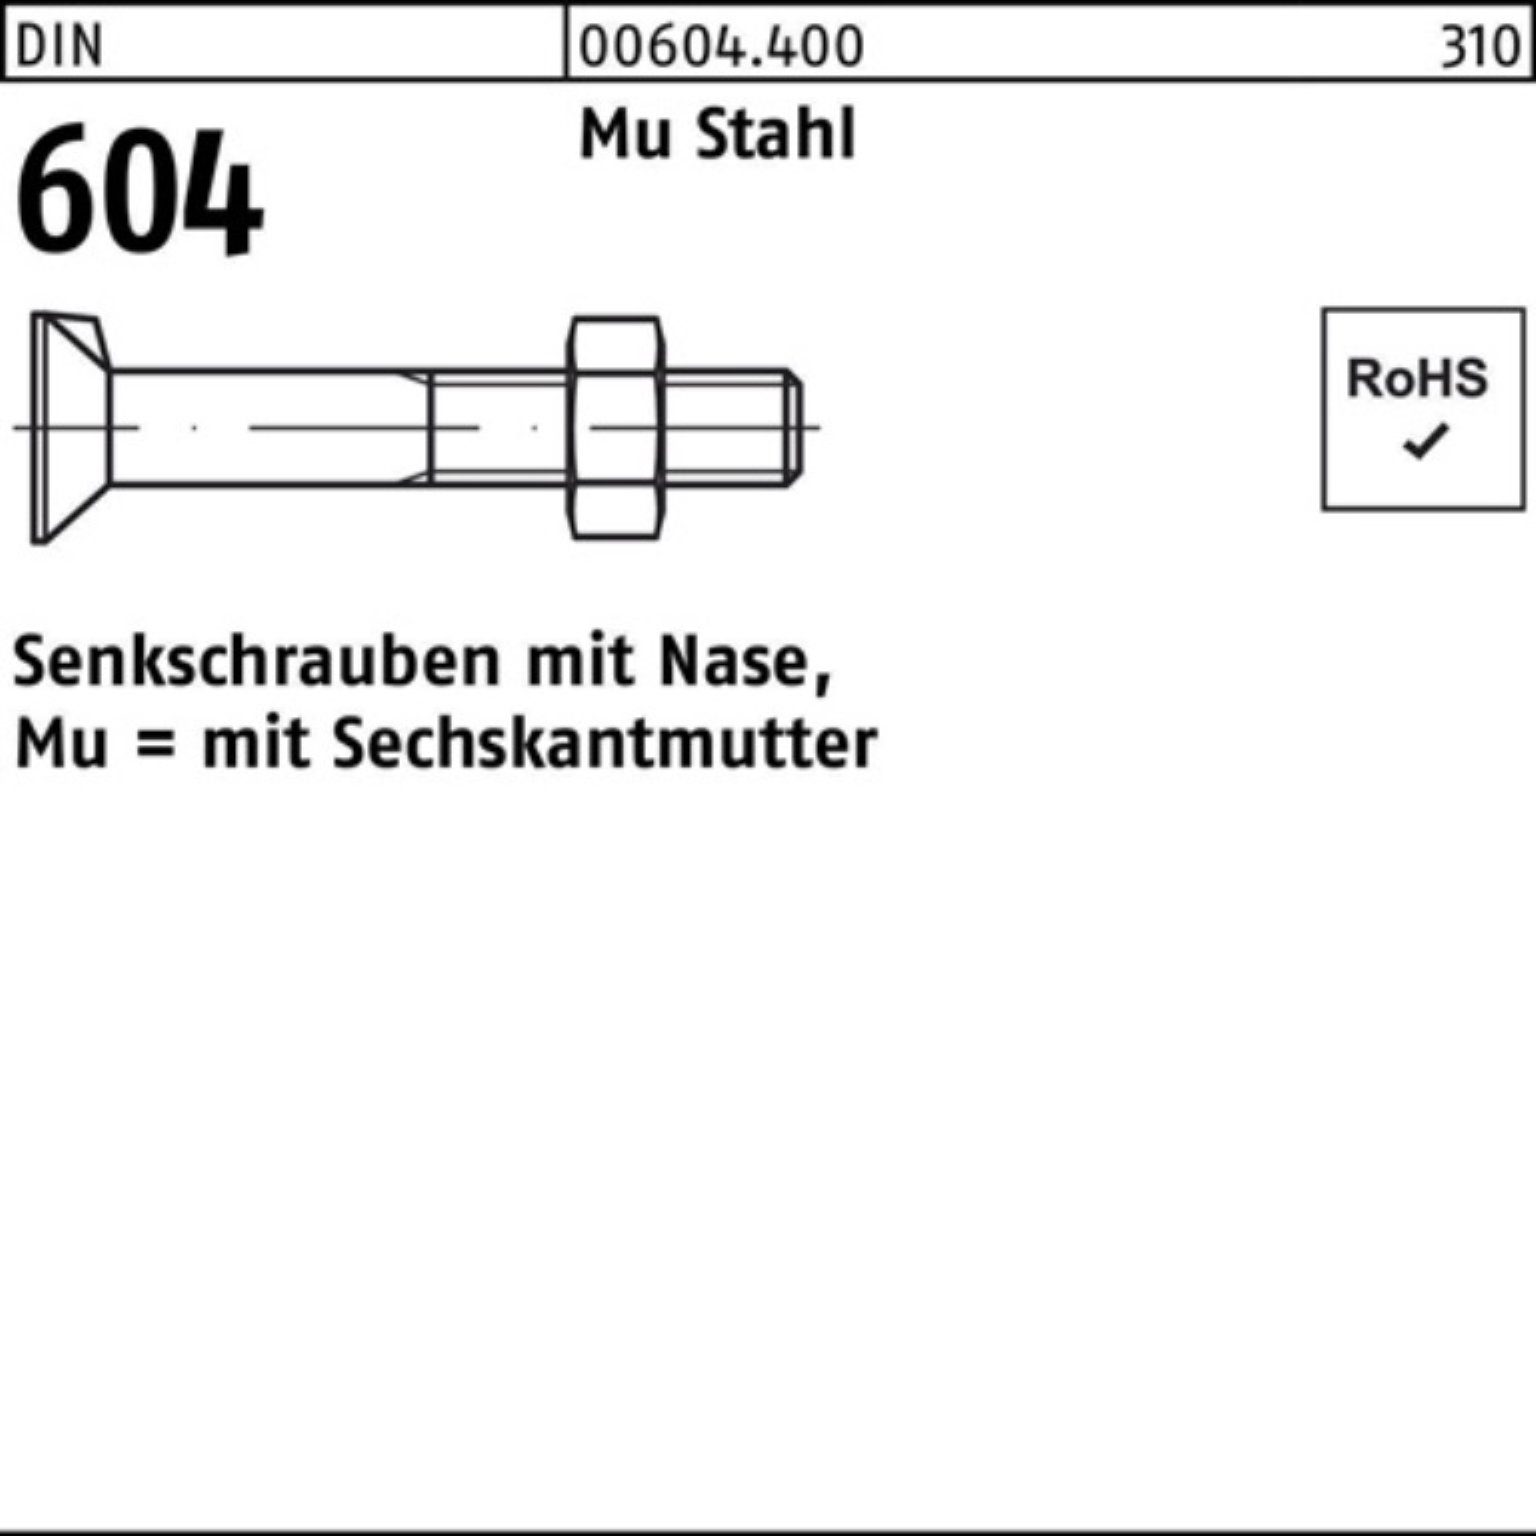 DIN Mu 604 Pack 2 M24x Senkschraube 100er Nase/6-ktmutter Reyher 70 Senkschraube Stahl 4.6